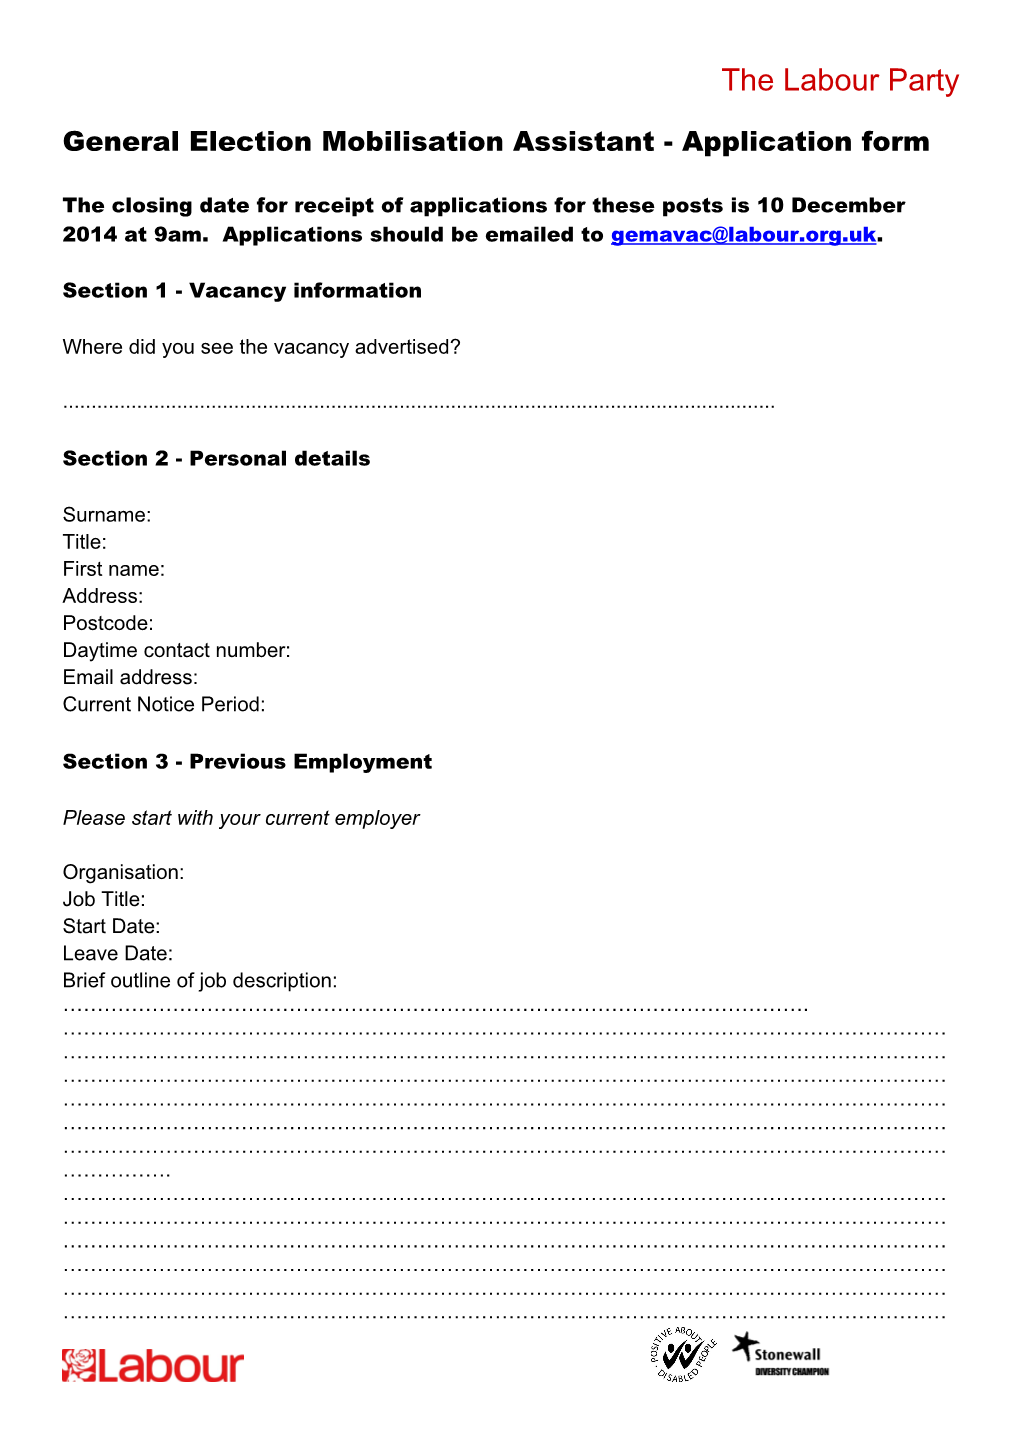 General Election Mobilisation Assistant - Application Form